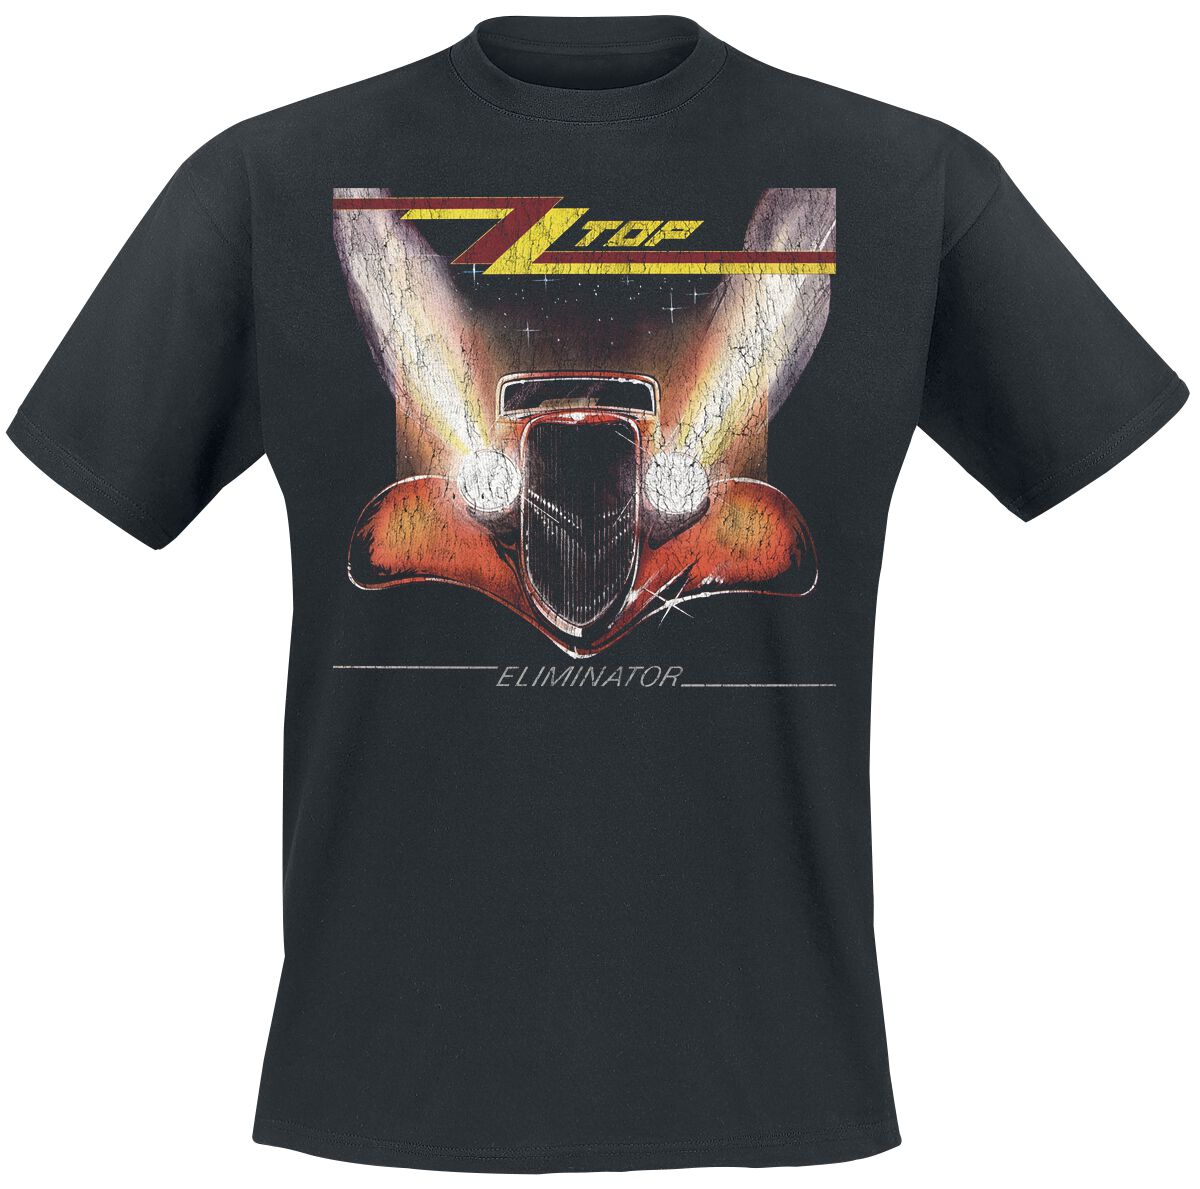 ZZ Top T-Shirt - Eliminator - S bis 3XL - für Männer - Größe M - schwarz  - Lizenziertes Merchandise!